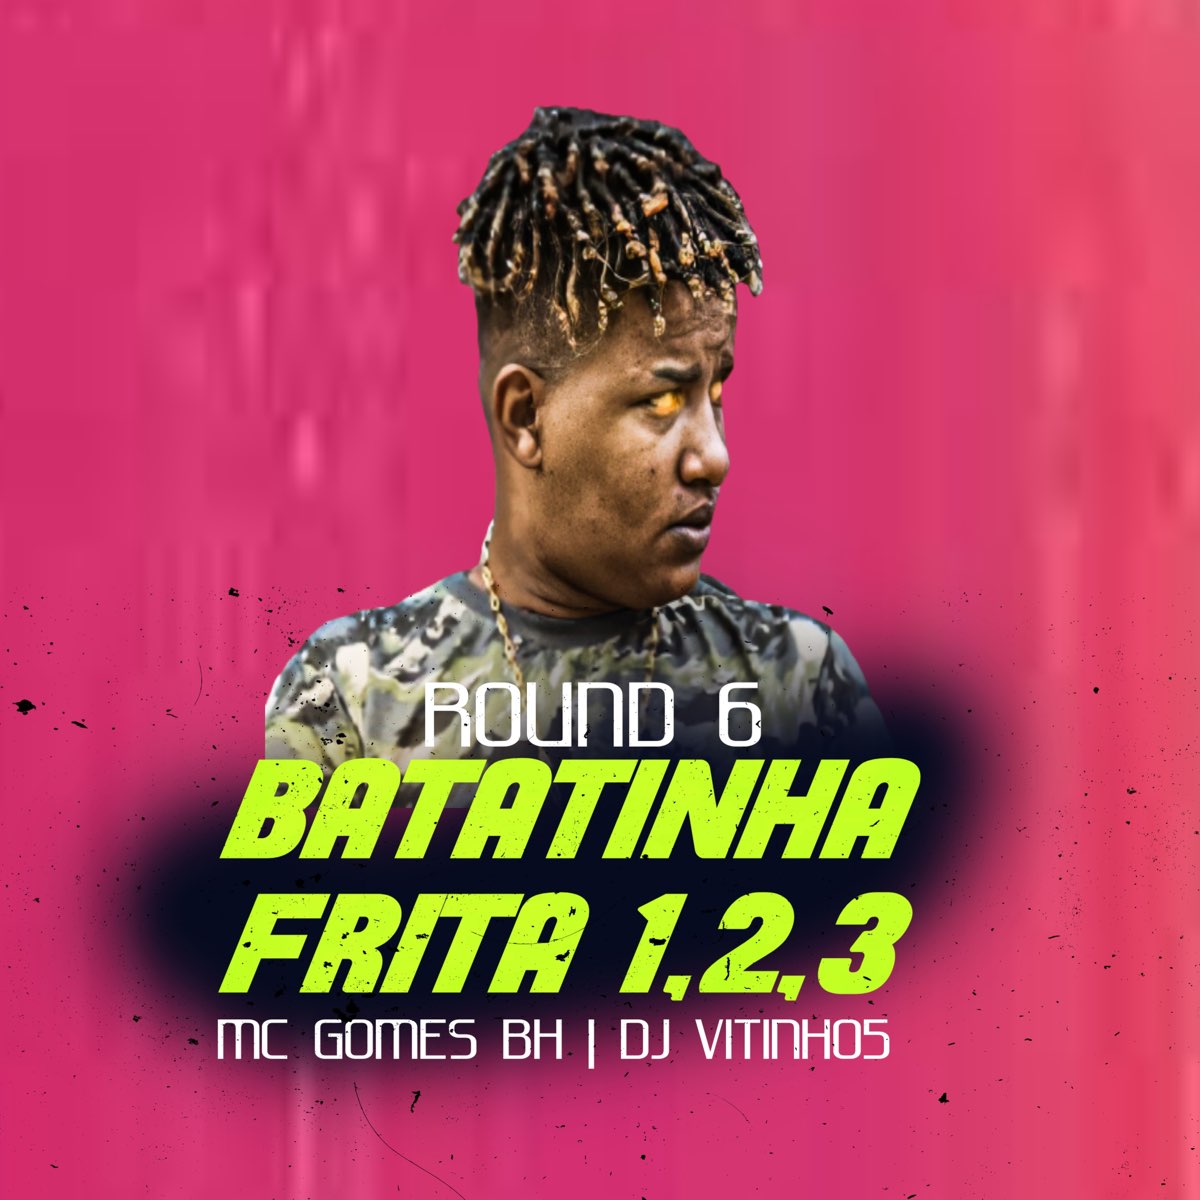 ROUND 6 - Batatinha Frita 1 2 3